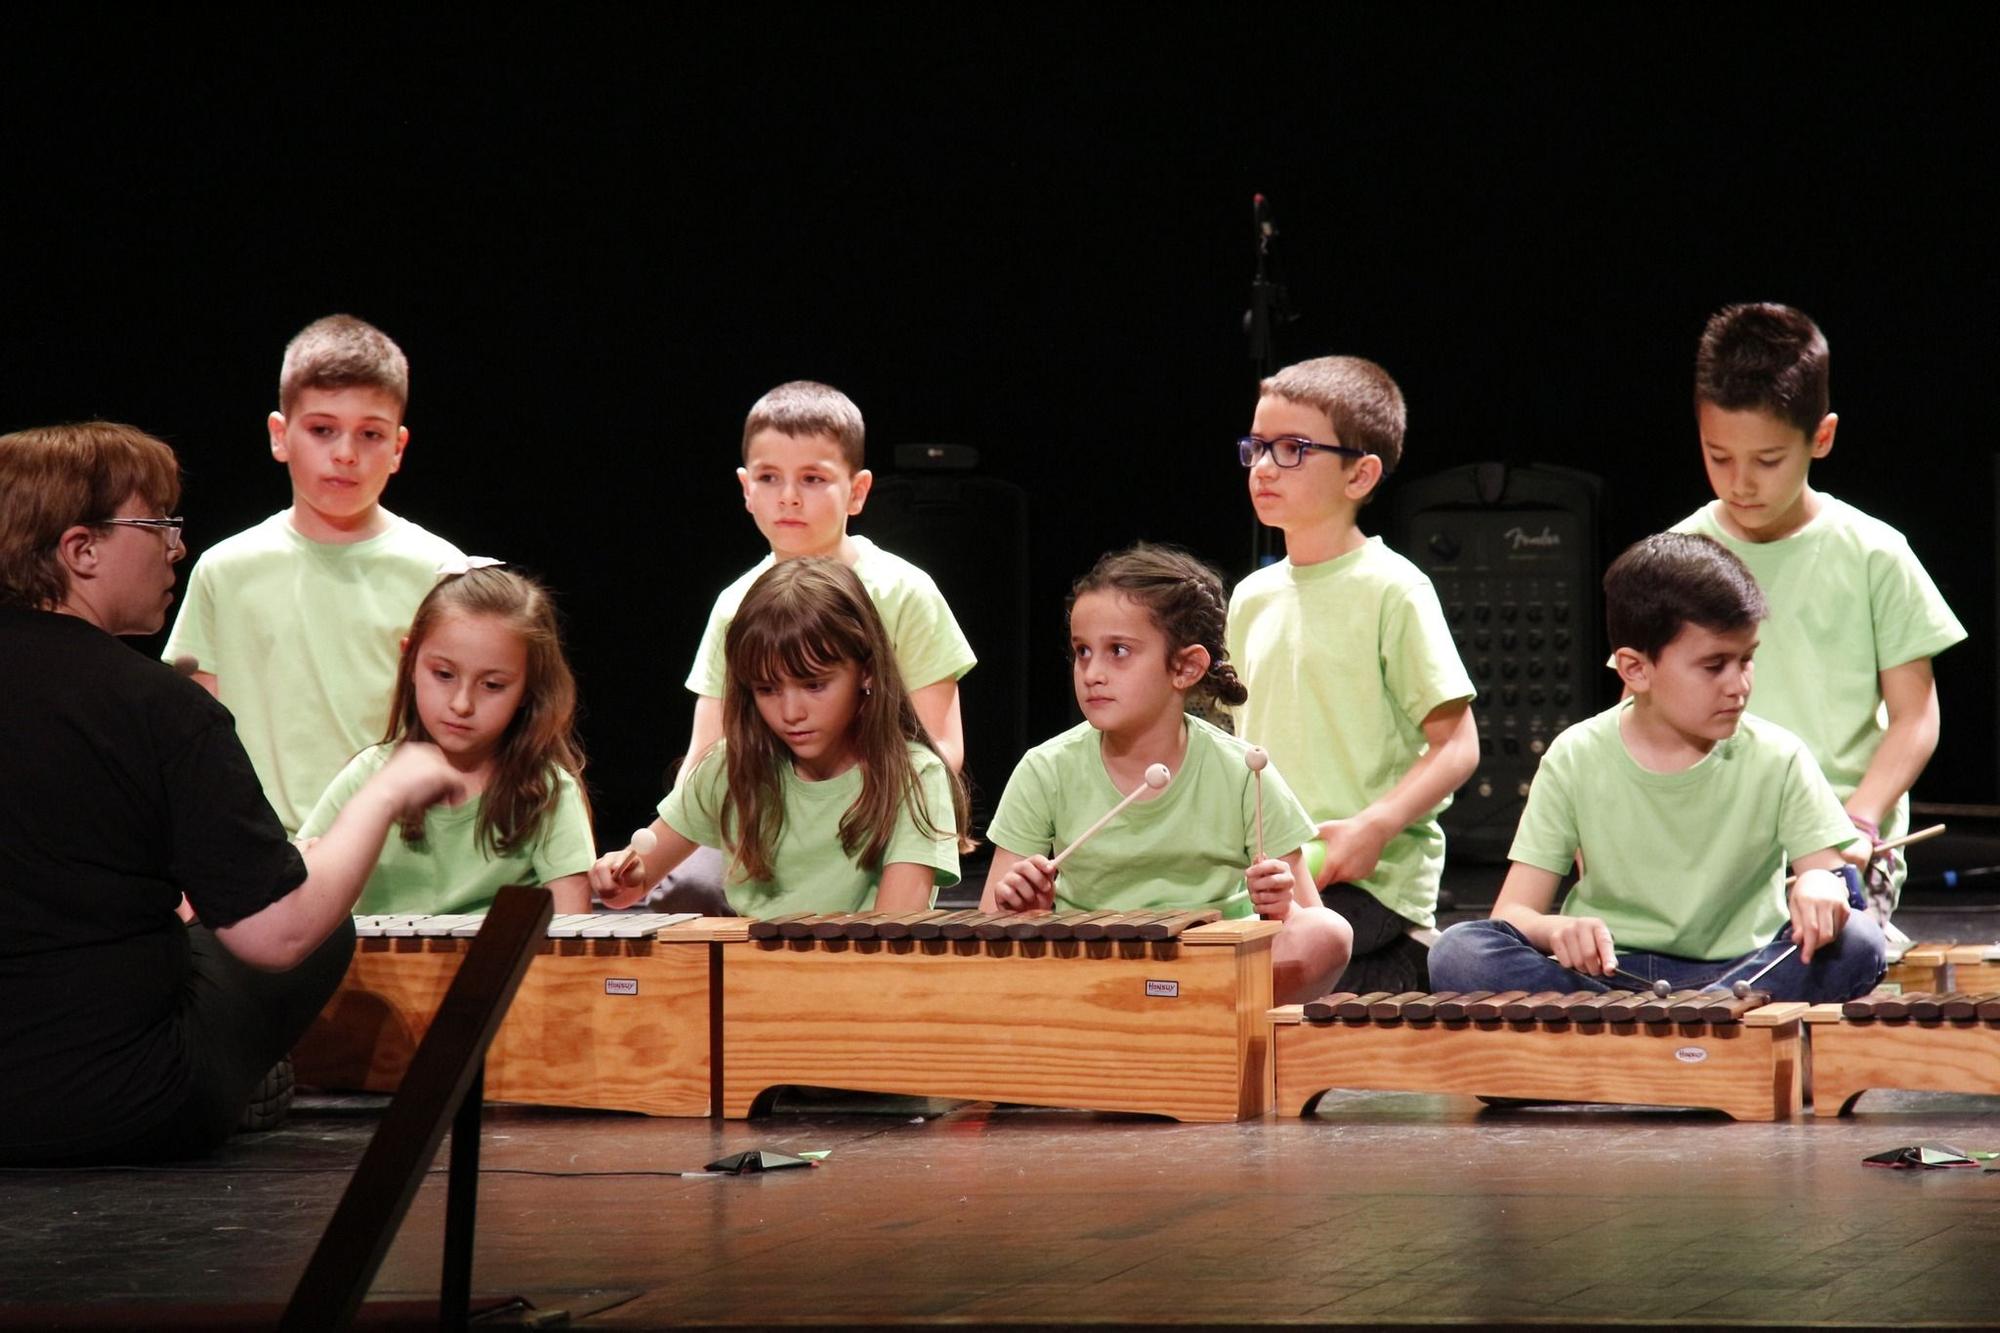 GALERÍA | Así despide el curso la Escuela de Música Duquesa Pimentel de Benavente